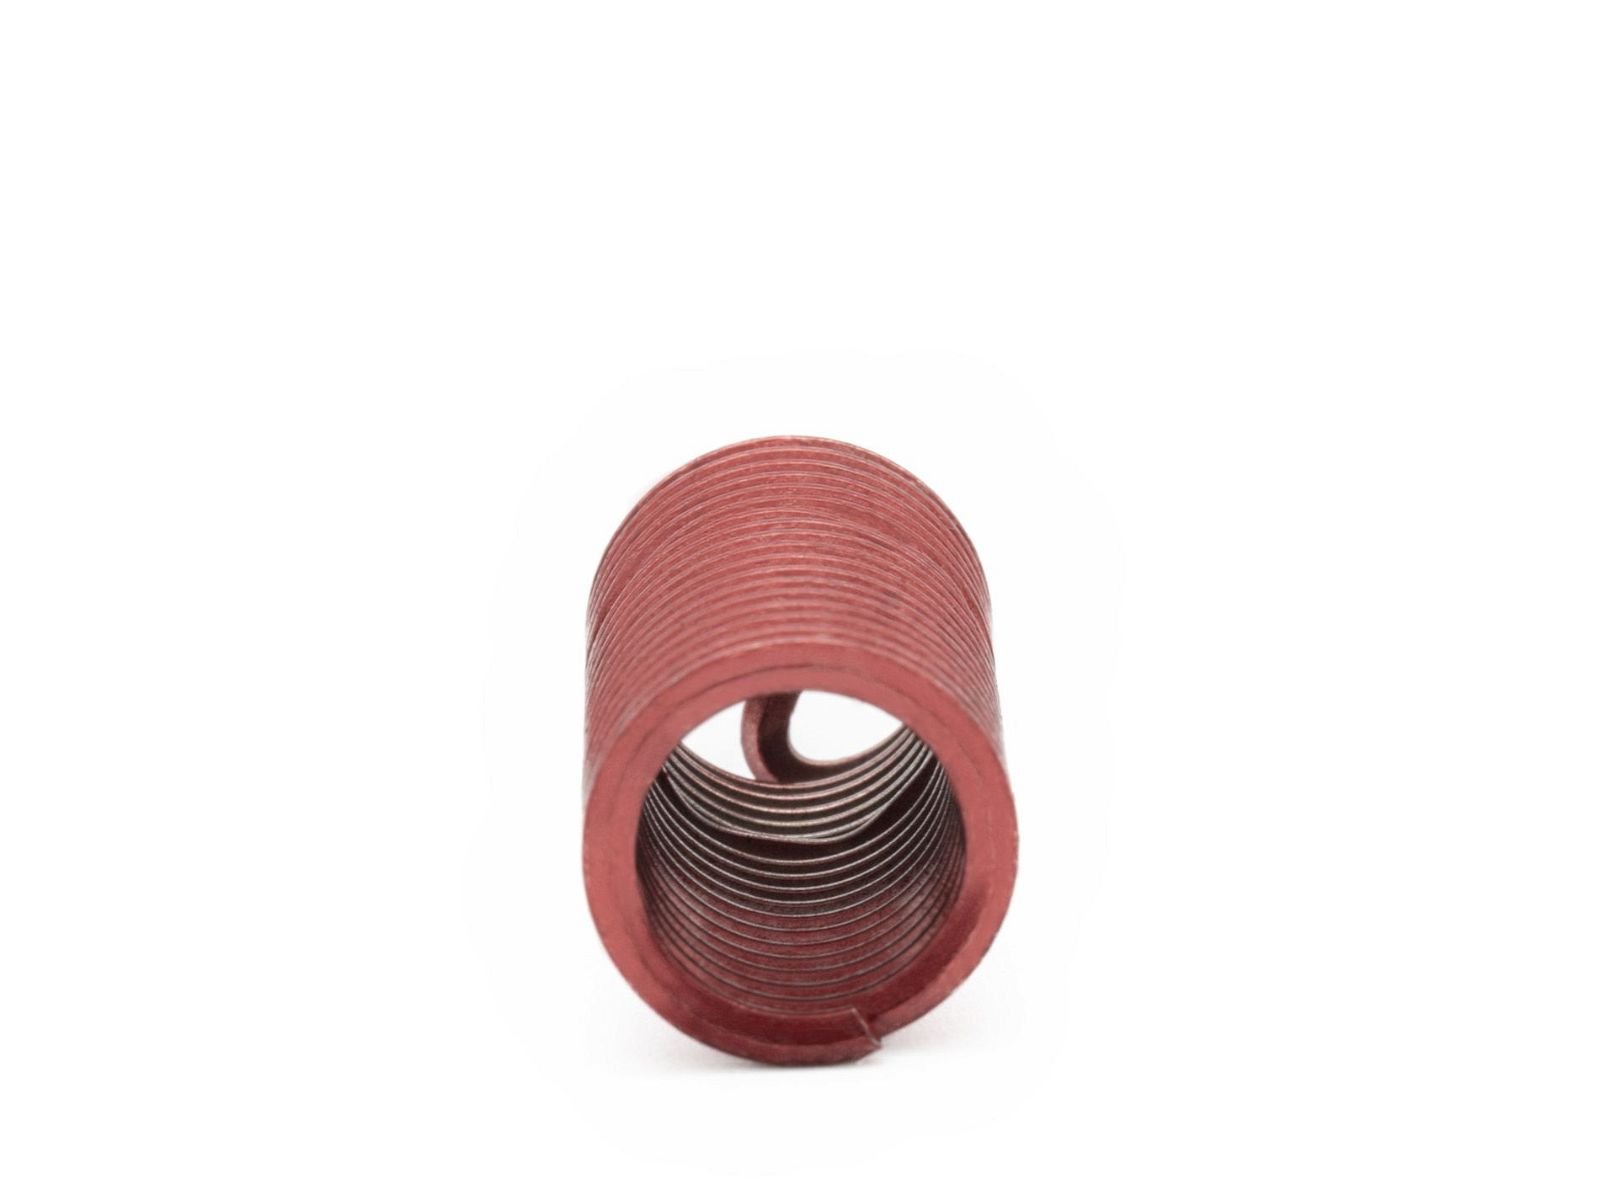 BaerCoil Wire Thread Inserts M 8 x 1.25 - 3.0 D (24 mm) - screw grip (screw locking) - 10 pcs.